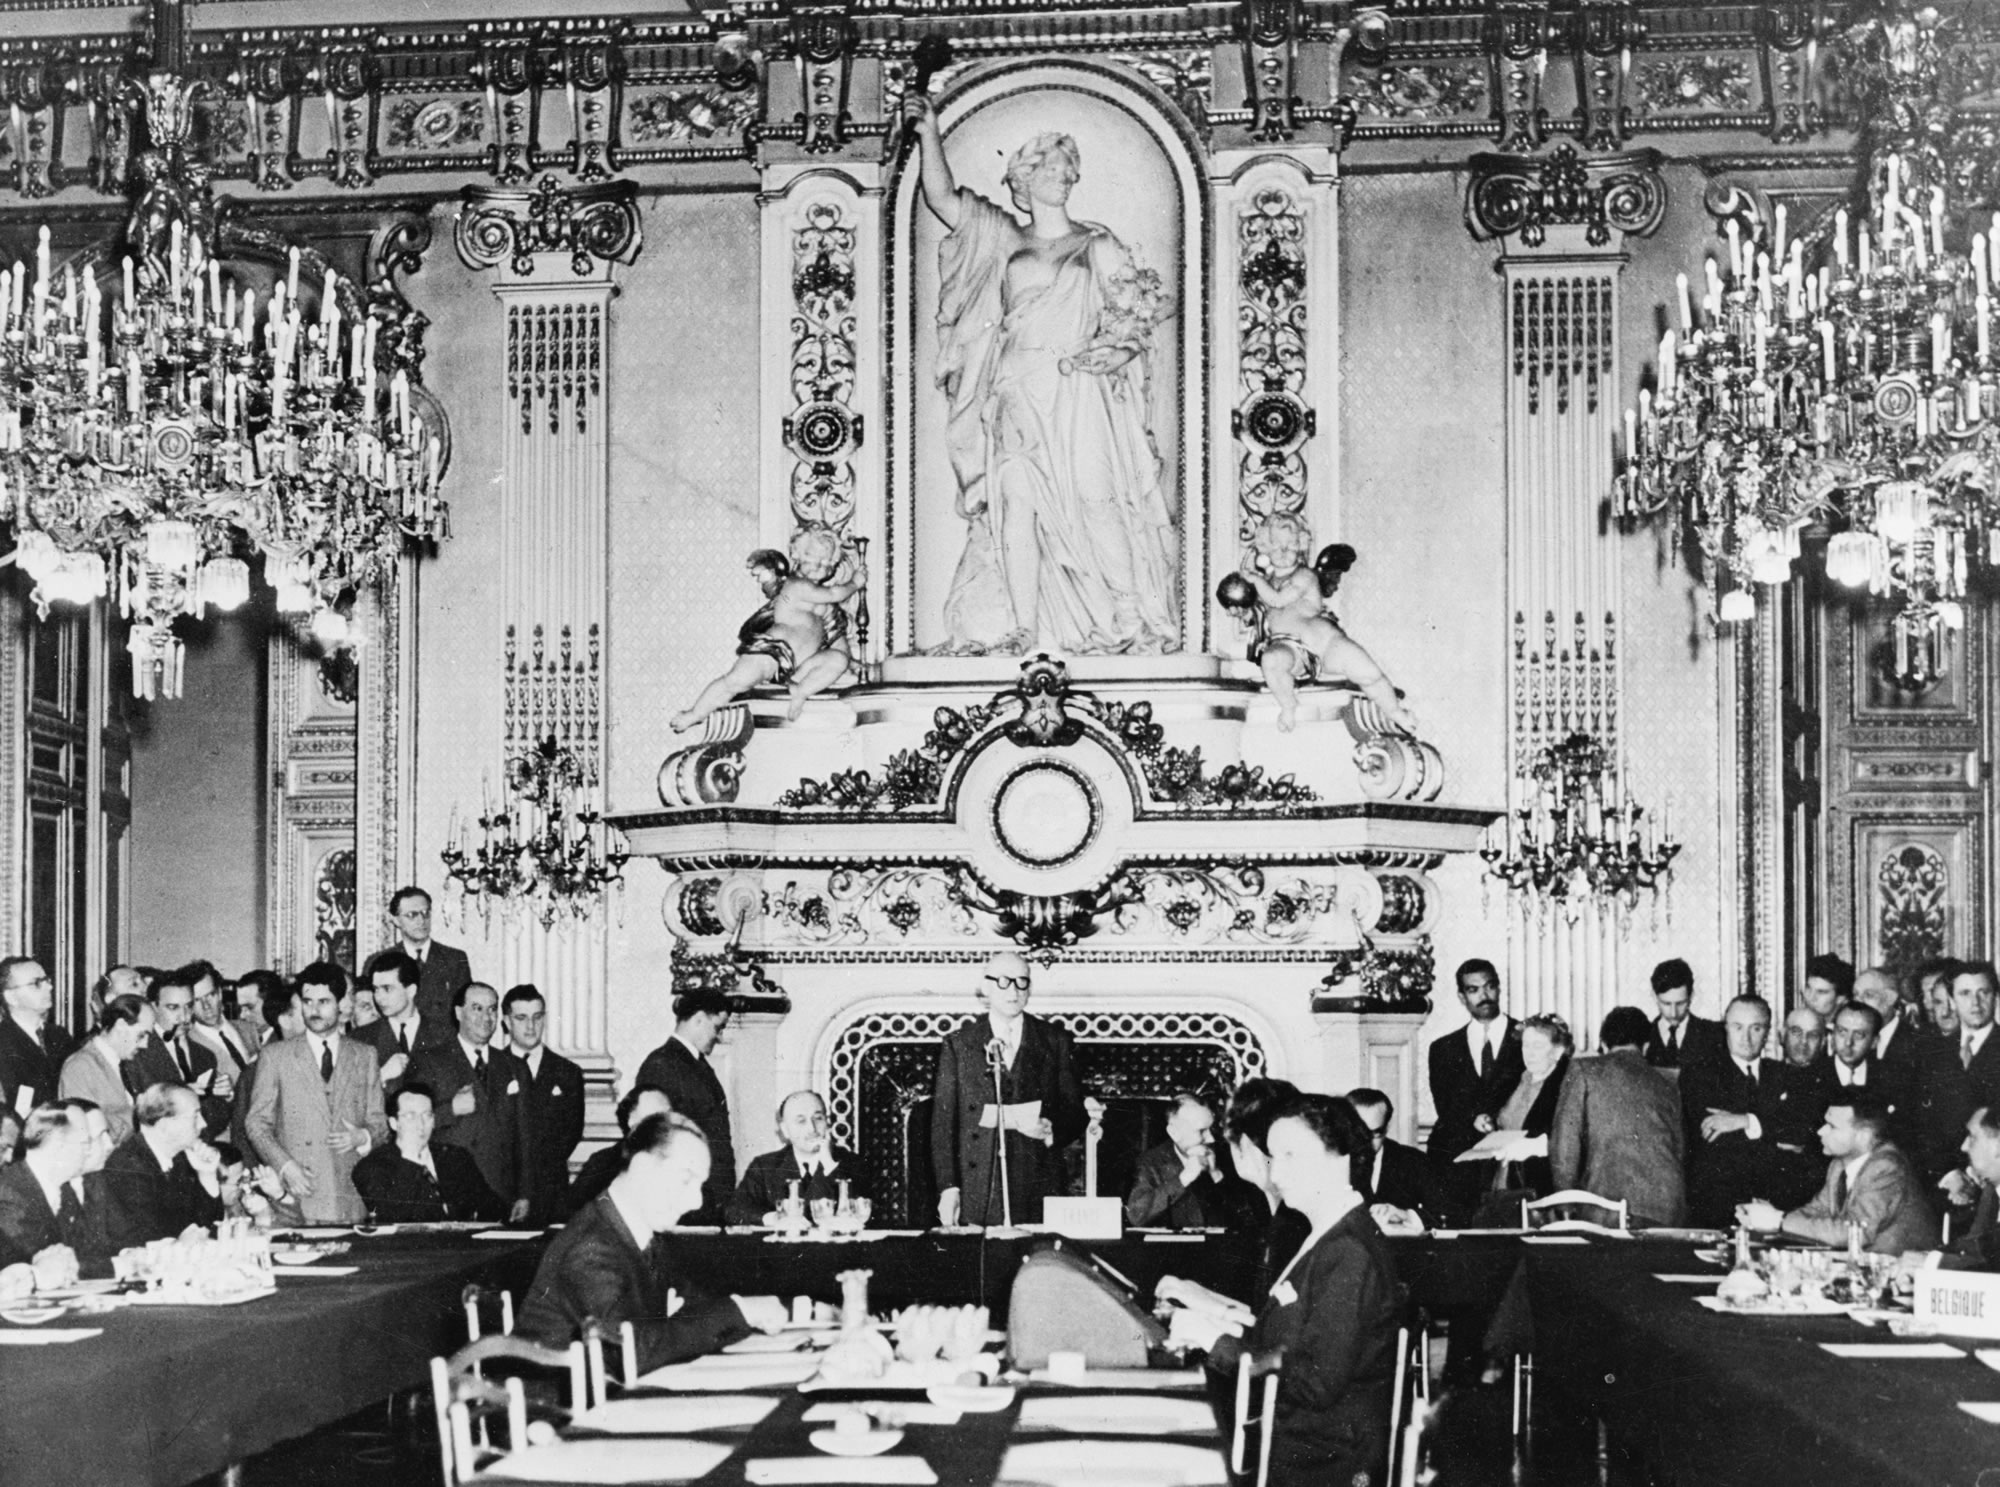 ∆ιακήρυξη Σουµάν την 9η Μαΐου 1950 στην Αίθουσα των Ρολογιών του Υπουργείου Εξωτερικών στο Quai d’Orsay στο Παρίσι: Ο Γάλλος υπουργός εξωτερικών Robert Schuman προτείνει την από κοινού διαχείριση της παραγωγής άνθρακα και χάλυβα στο πλαίσιο µιας Ευρωπαϊκής Κοινότητας Άνθρακα και Χάλυβα. Με τον τρόπο αυτόν, ο πόλεµος µεταξύ της Γαλλίας και της Γερµανίας θα καταστεί όχι µόνον αδιανόητος αλλά και υλικά αδύνατος.